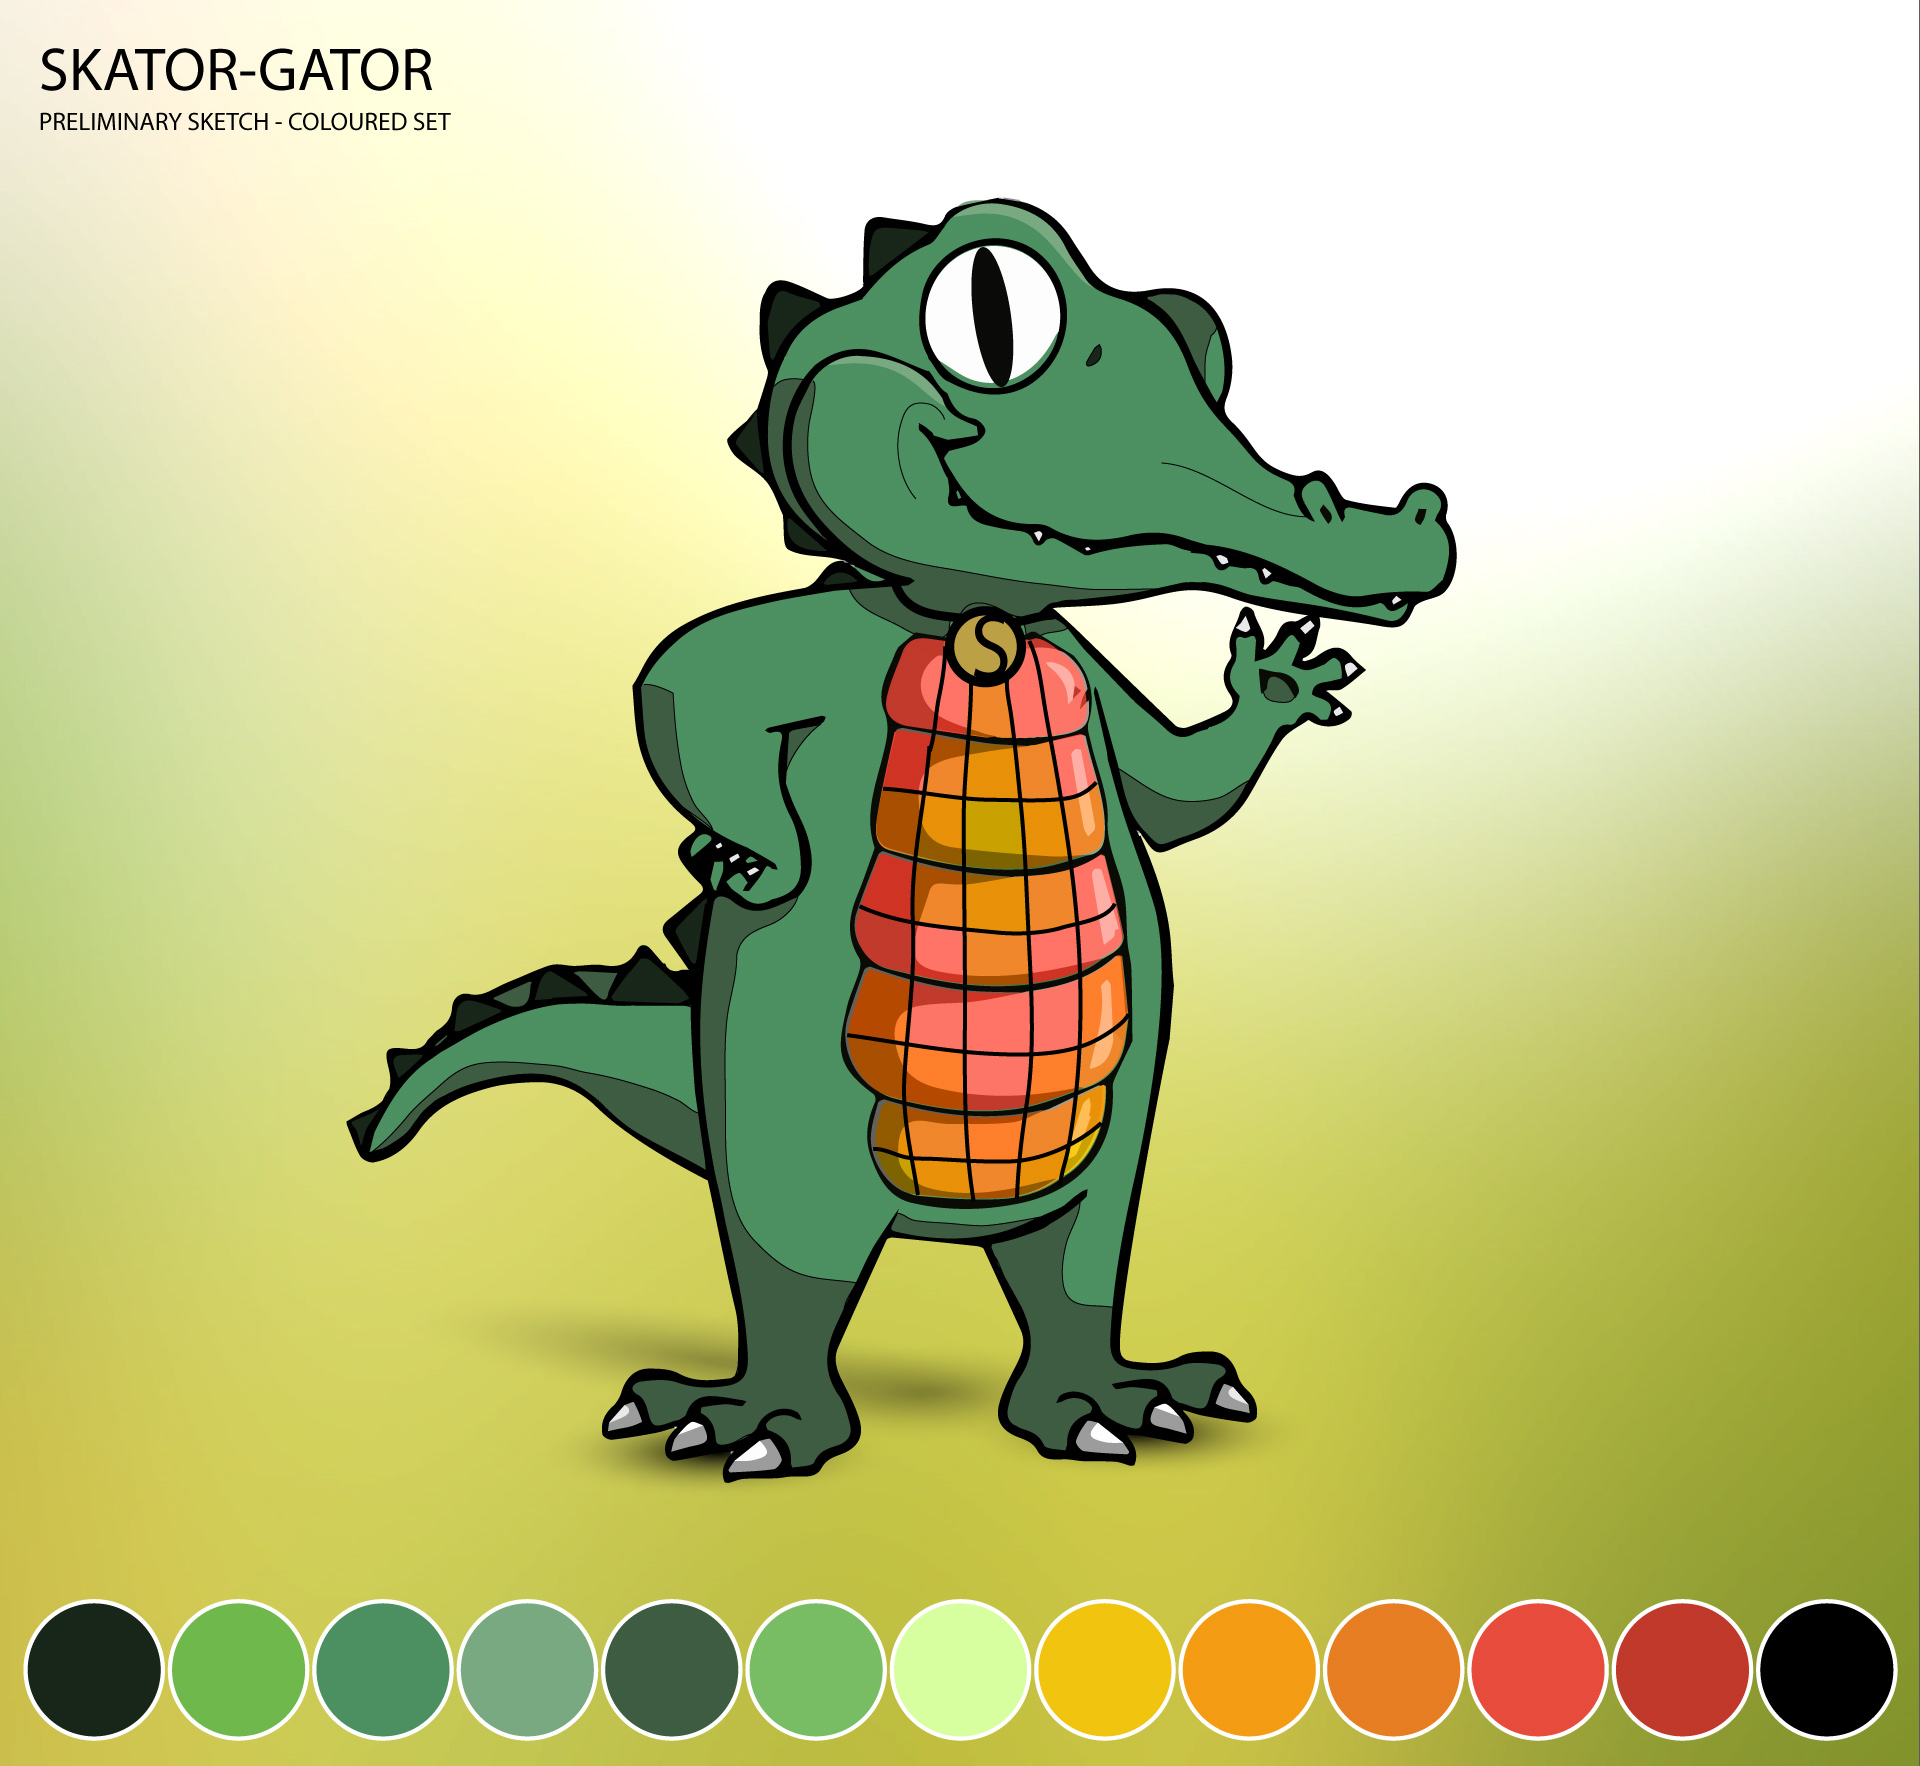 skator-gator_prelim_coloured